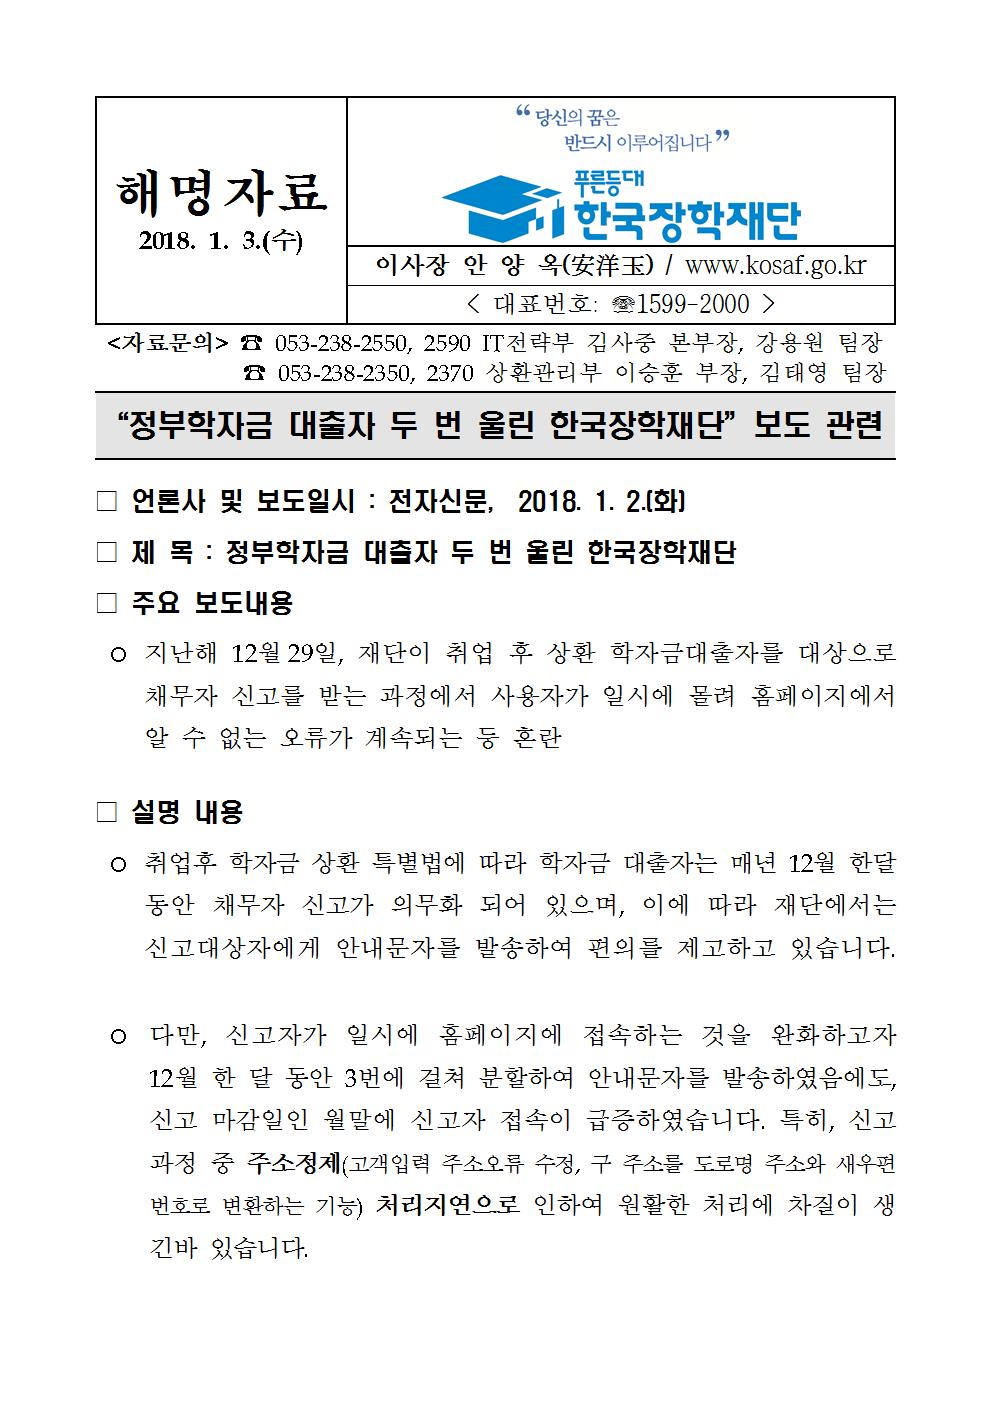 해명자료 정부학자금 대출자 두번 울린 한국장학재단 보도관련 이미지입니다. 자세한 내용은 아래를 참고하세요. 